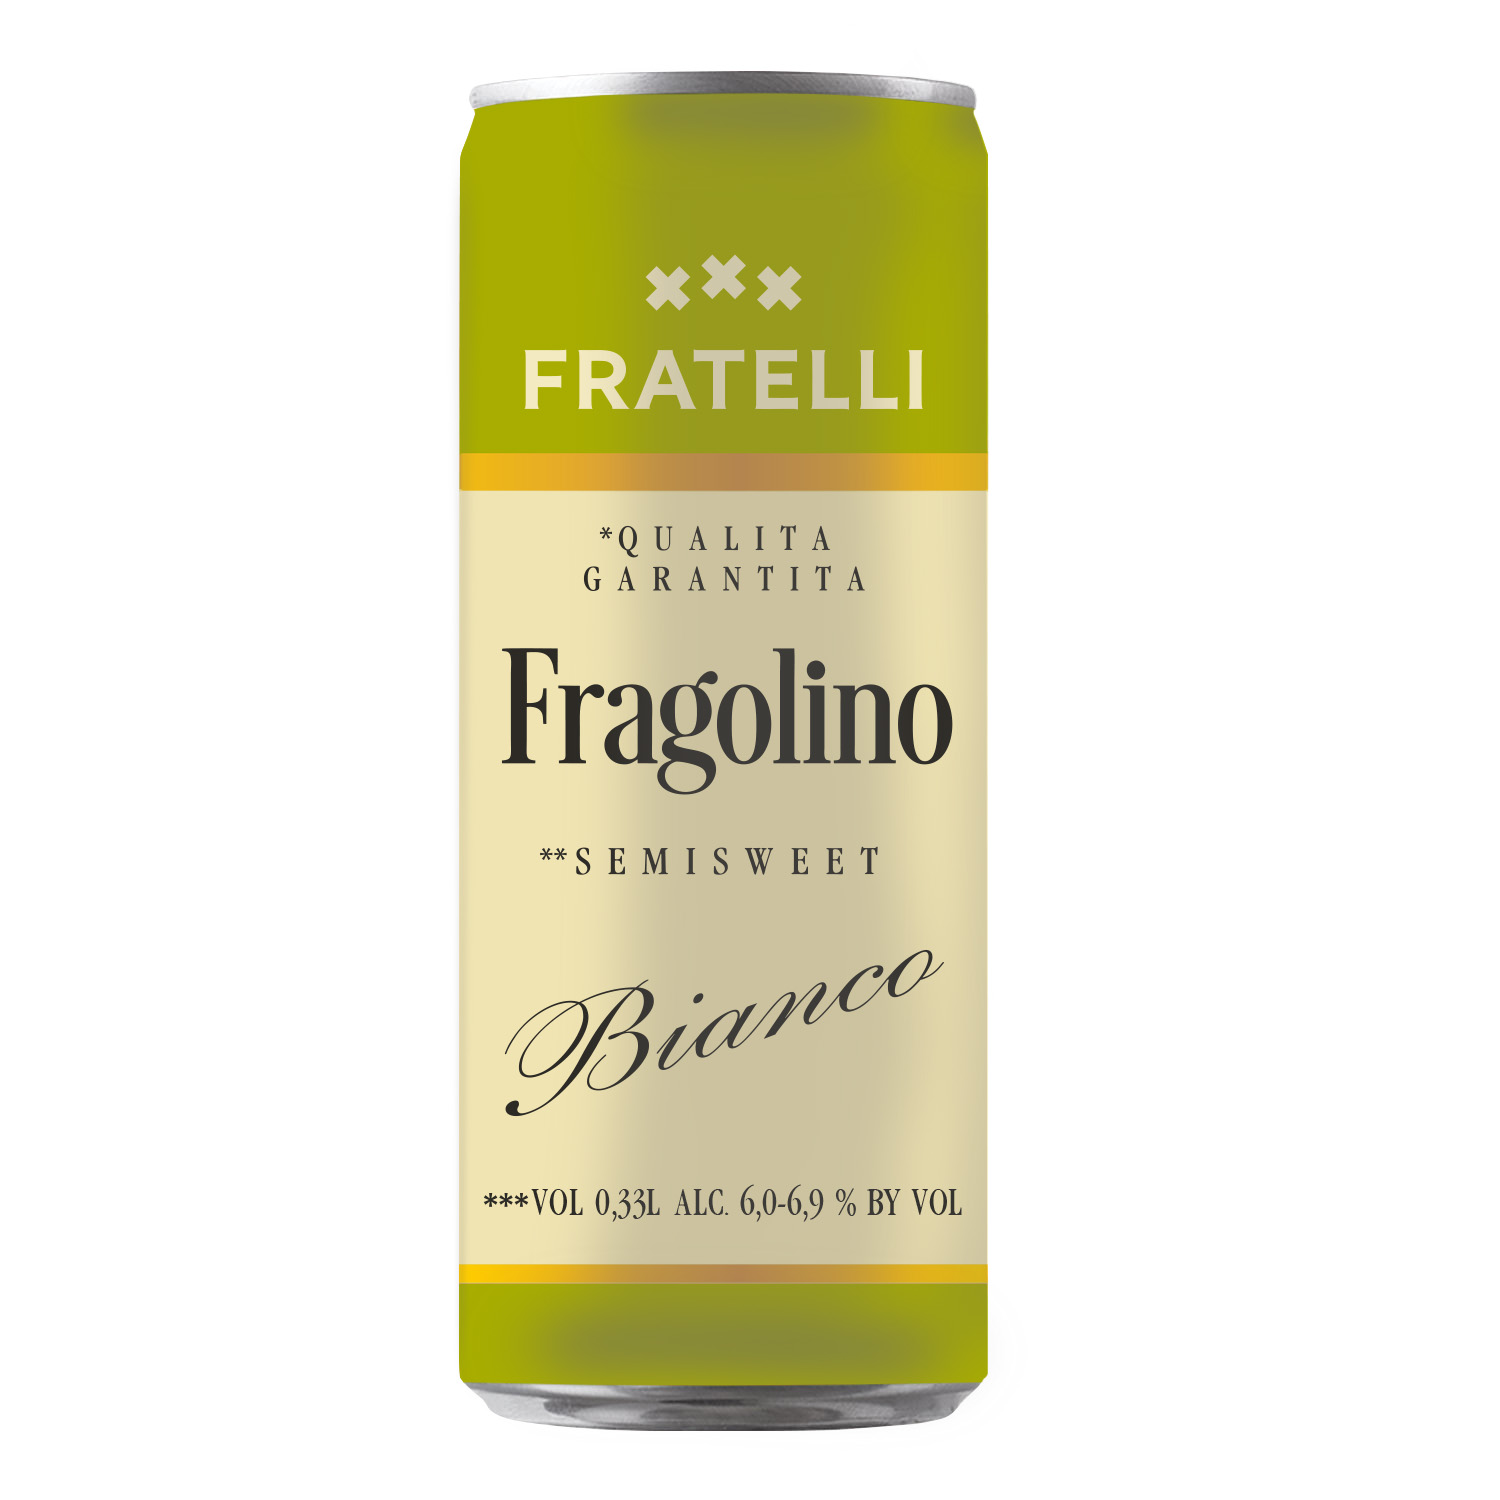 Напиток винный Fratelli Fragolino Bianco слабоалкогольный игристый белый полусладкий 6,0-6,9% 0,33л ж/б